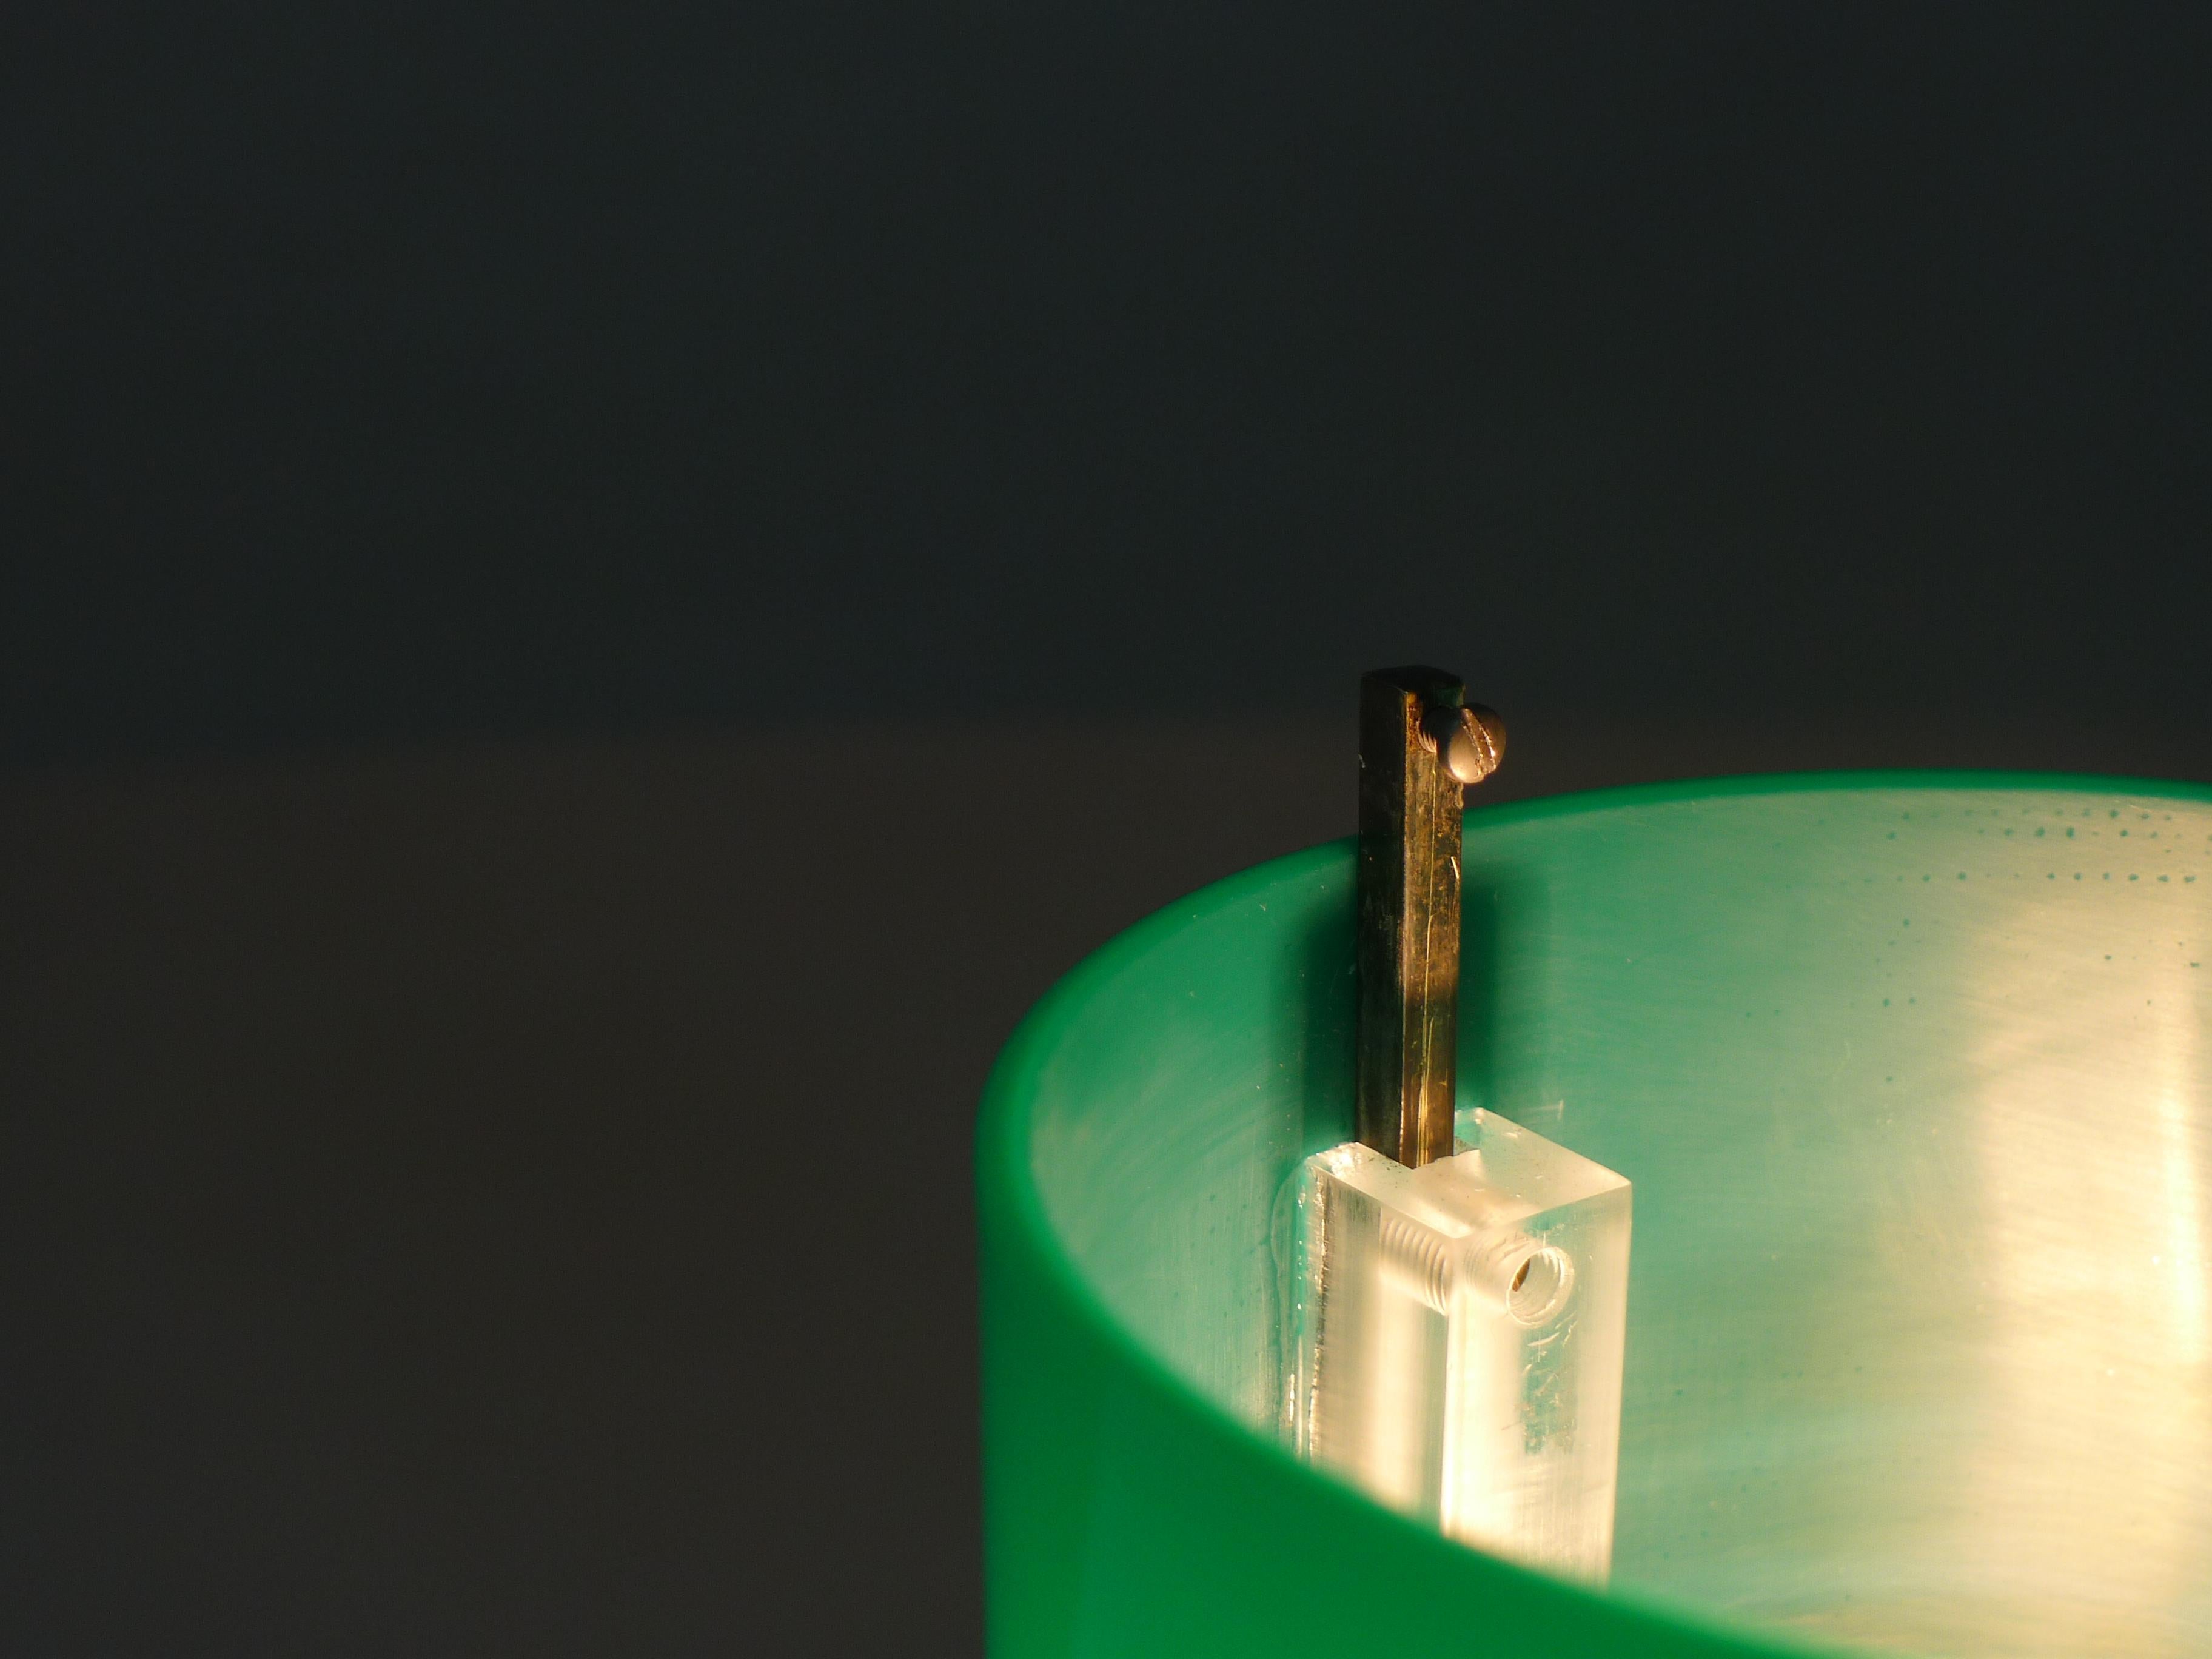 Tito Agnoli, Tisch- oder Schreibtischleuchte, Modell 269 für Oluce, Italien. Ein vernickelter Zylinder trägt eine aufrechte Säule mit gezackten Zähnen, die es dem grünen Plexiglasschirm ermöglicht, sich von oben nach unten um etwa 3 cm zu bewegen.